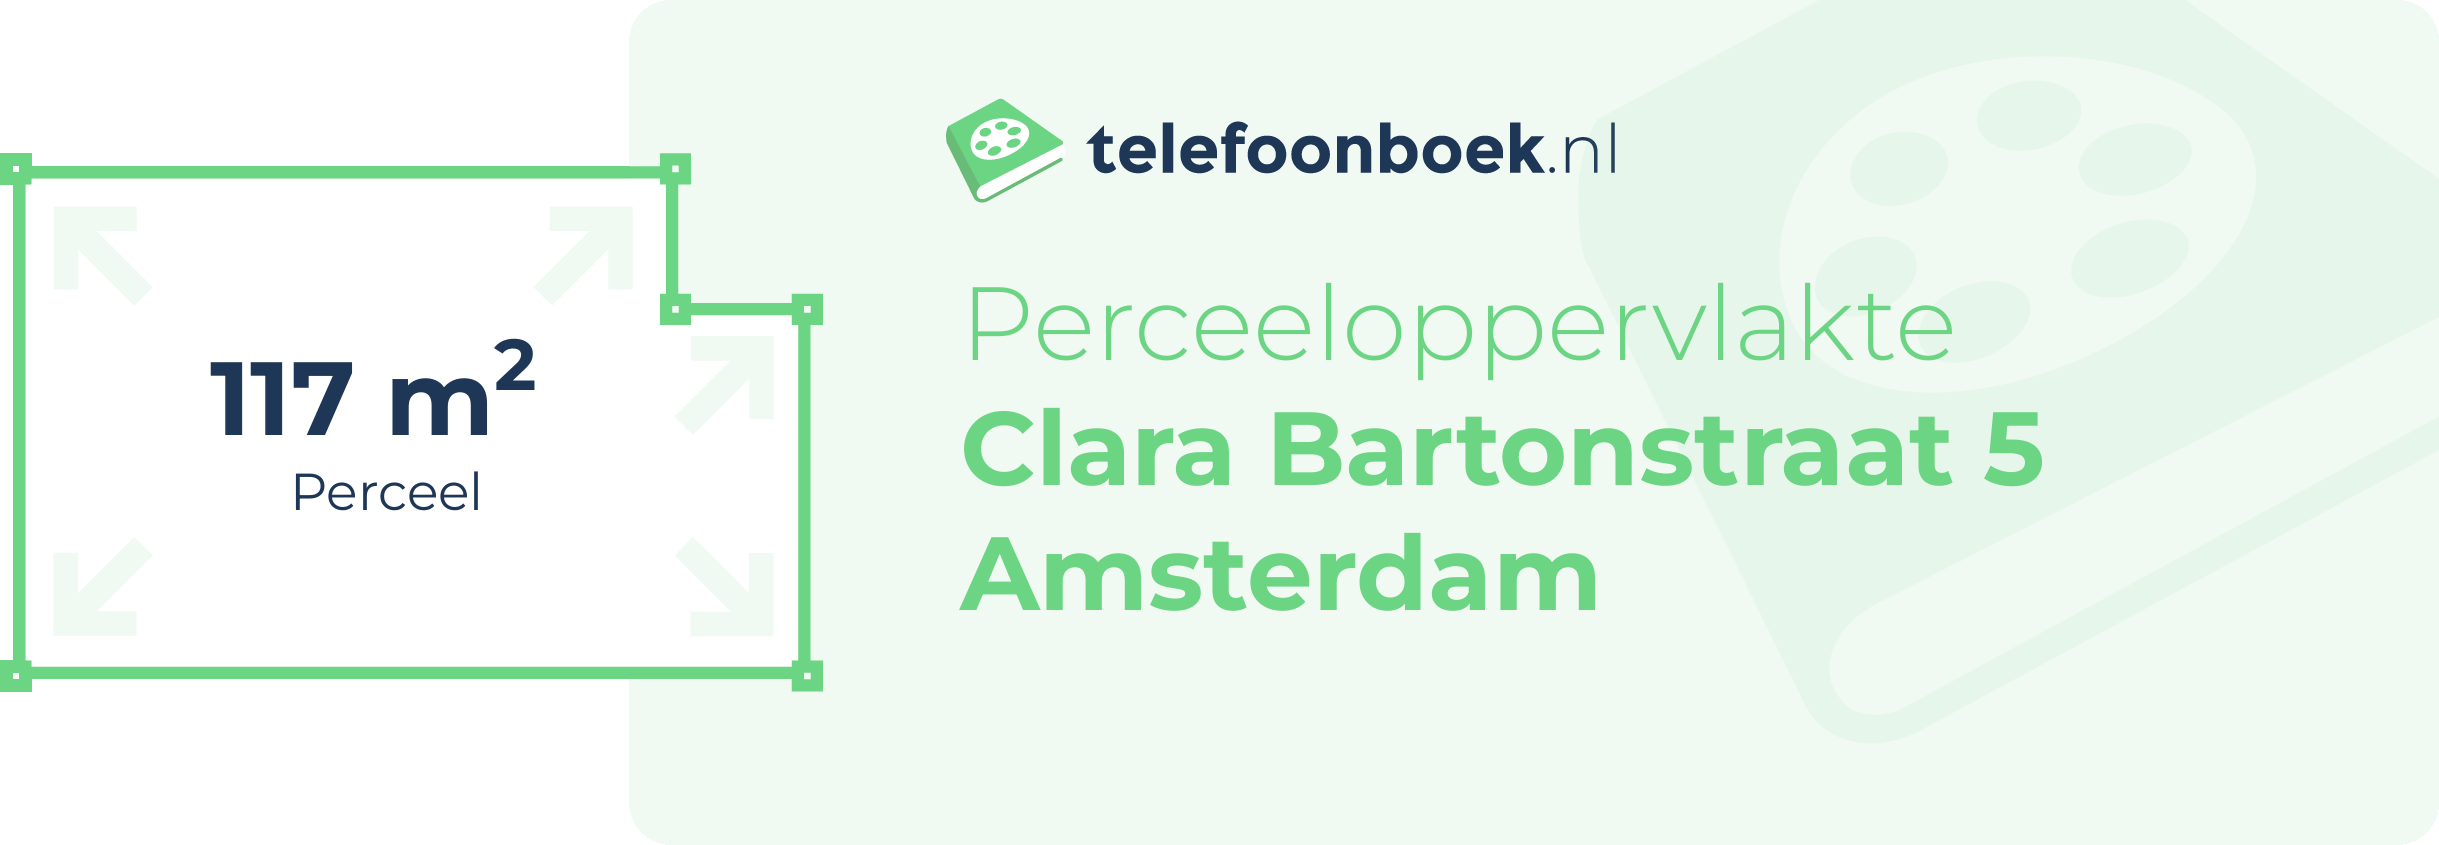 Perceeloppervlakte Clara Bartonstraat 5 Amsterdam